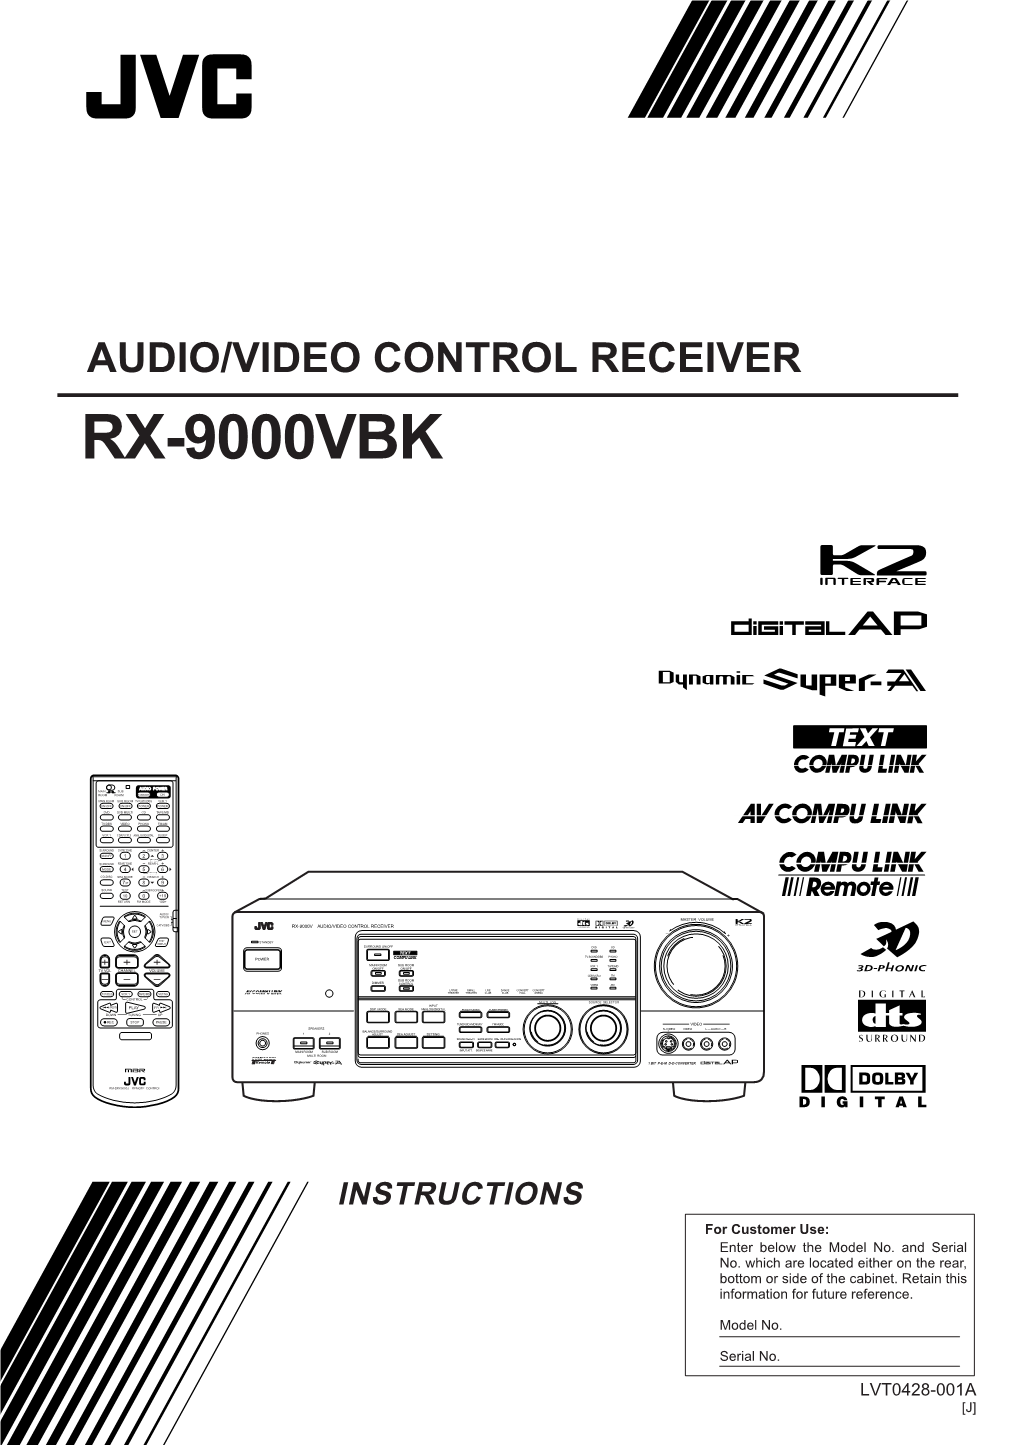 Audio/Video Control Receiver Rx-9000Vbk